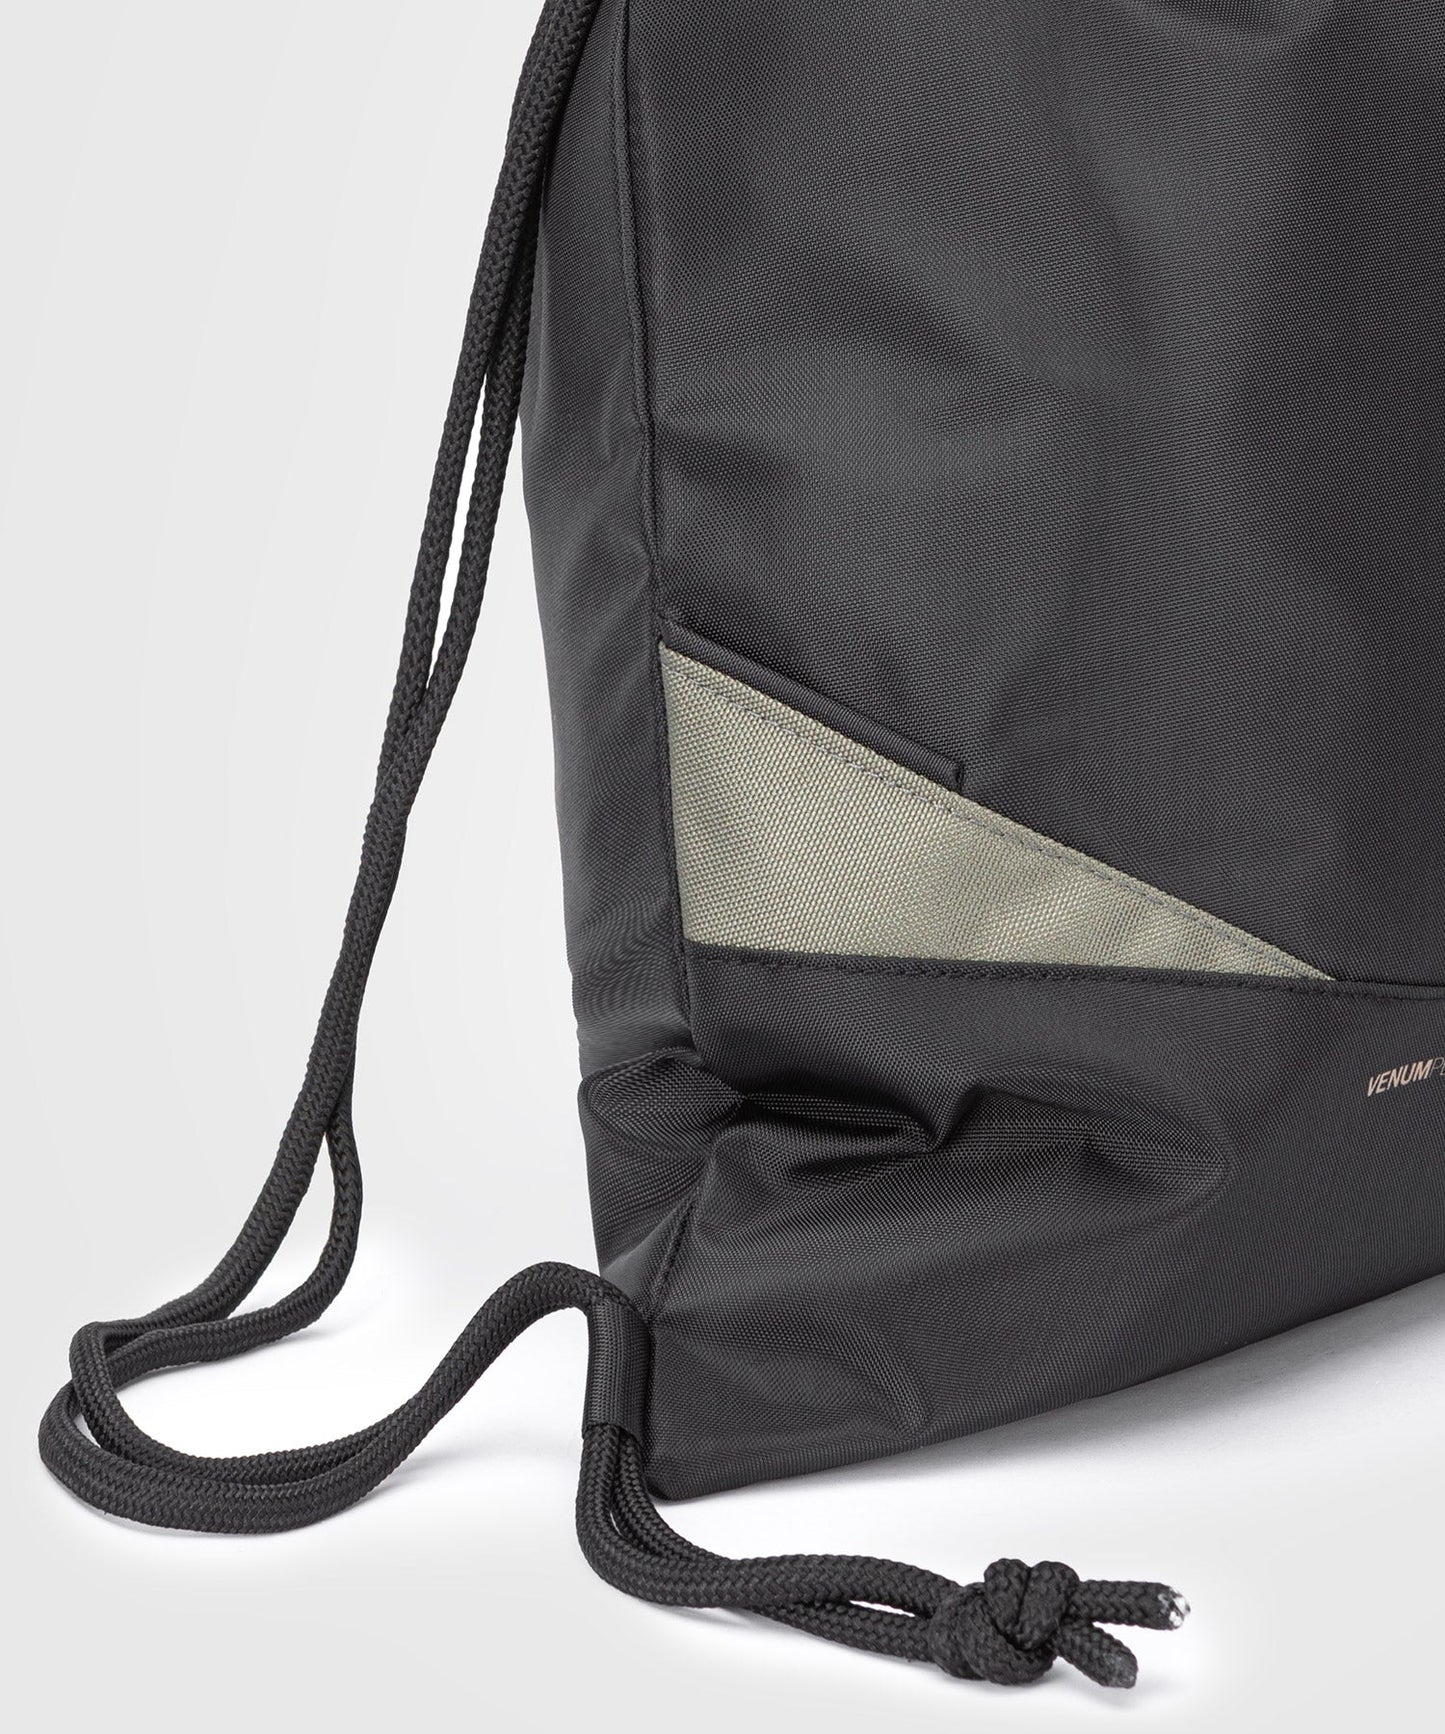 Venum Evo 2 Drawstring Bag - Black/Khaki